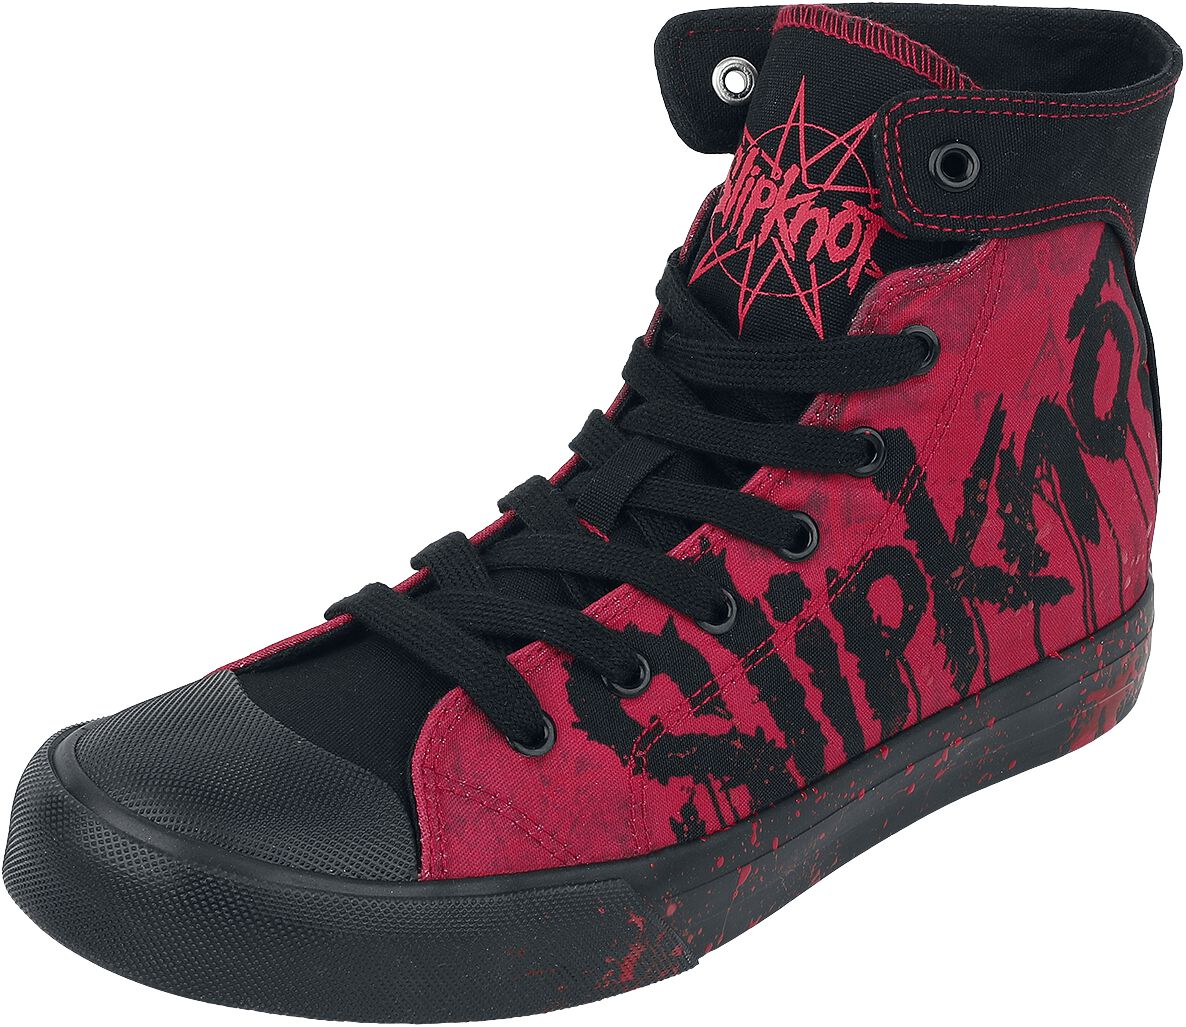 Slipknot Sneaker high - EMP Signature Collection - EU37 bis EU42 - Größe EU38 - schwarz/rot  - EMP exklusives Merchandise!